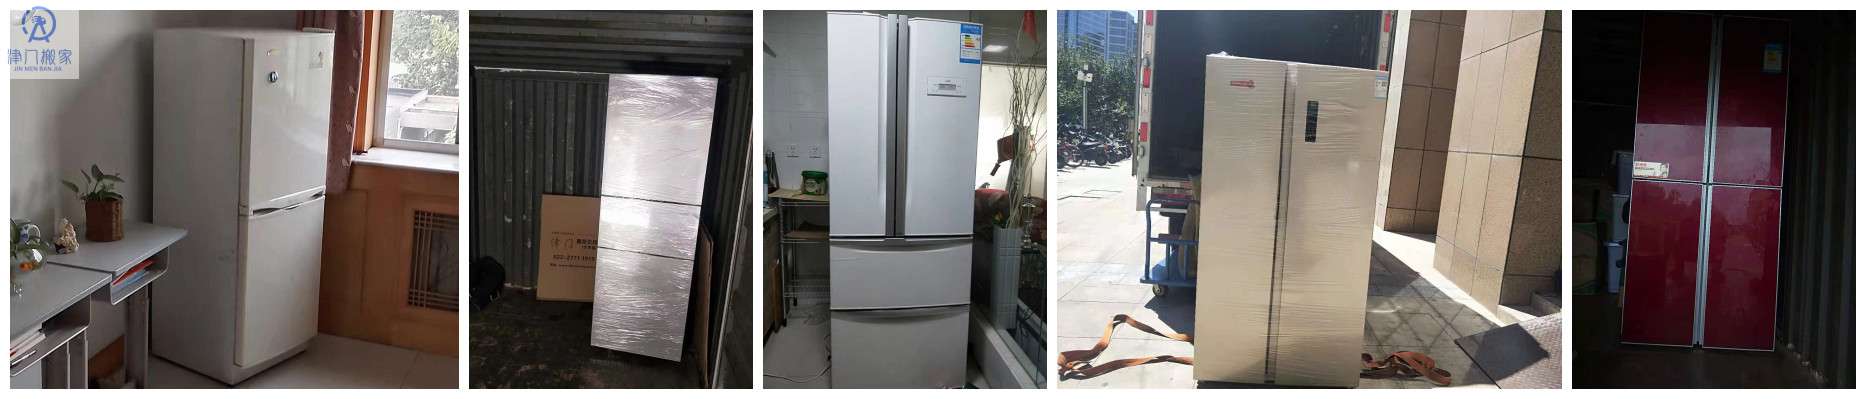 如何搬運冰箱-搬運冰箱注意事項